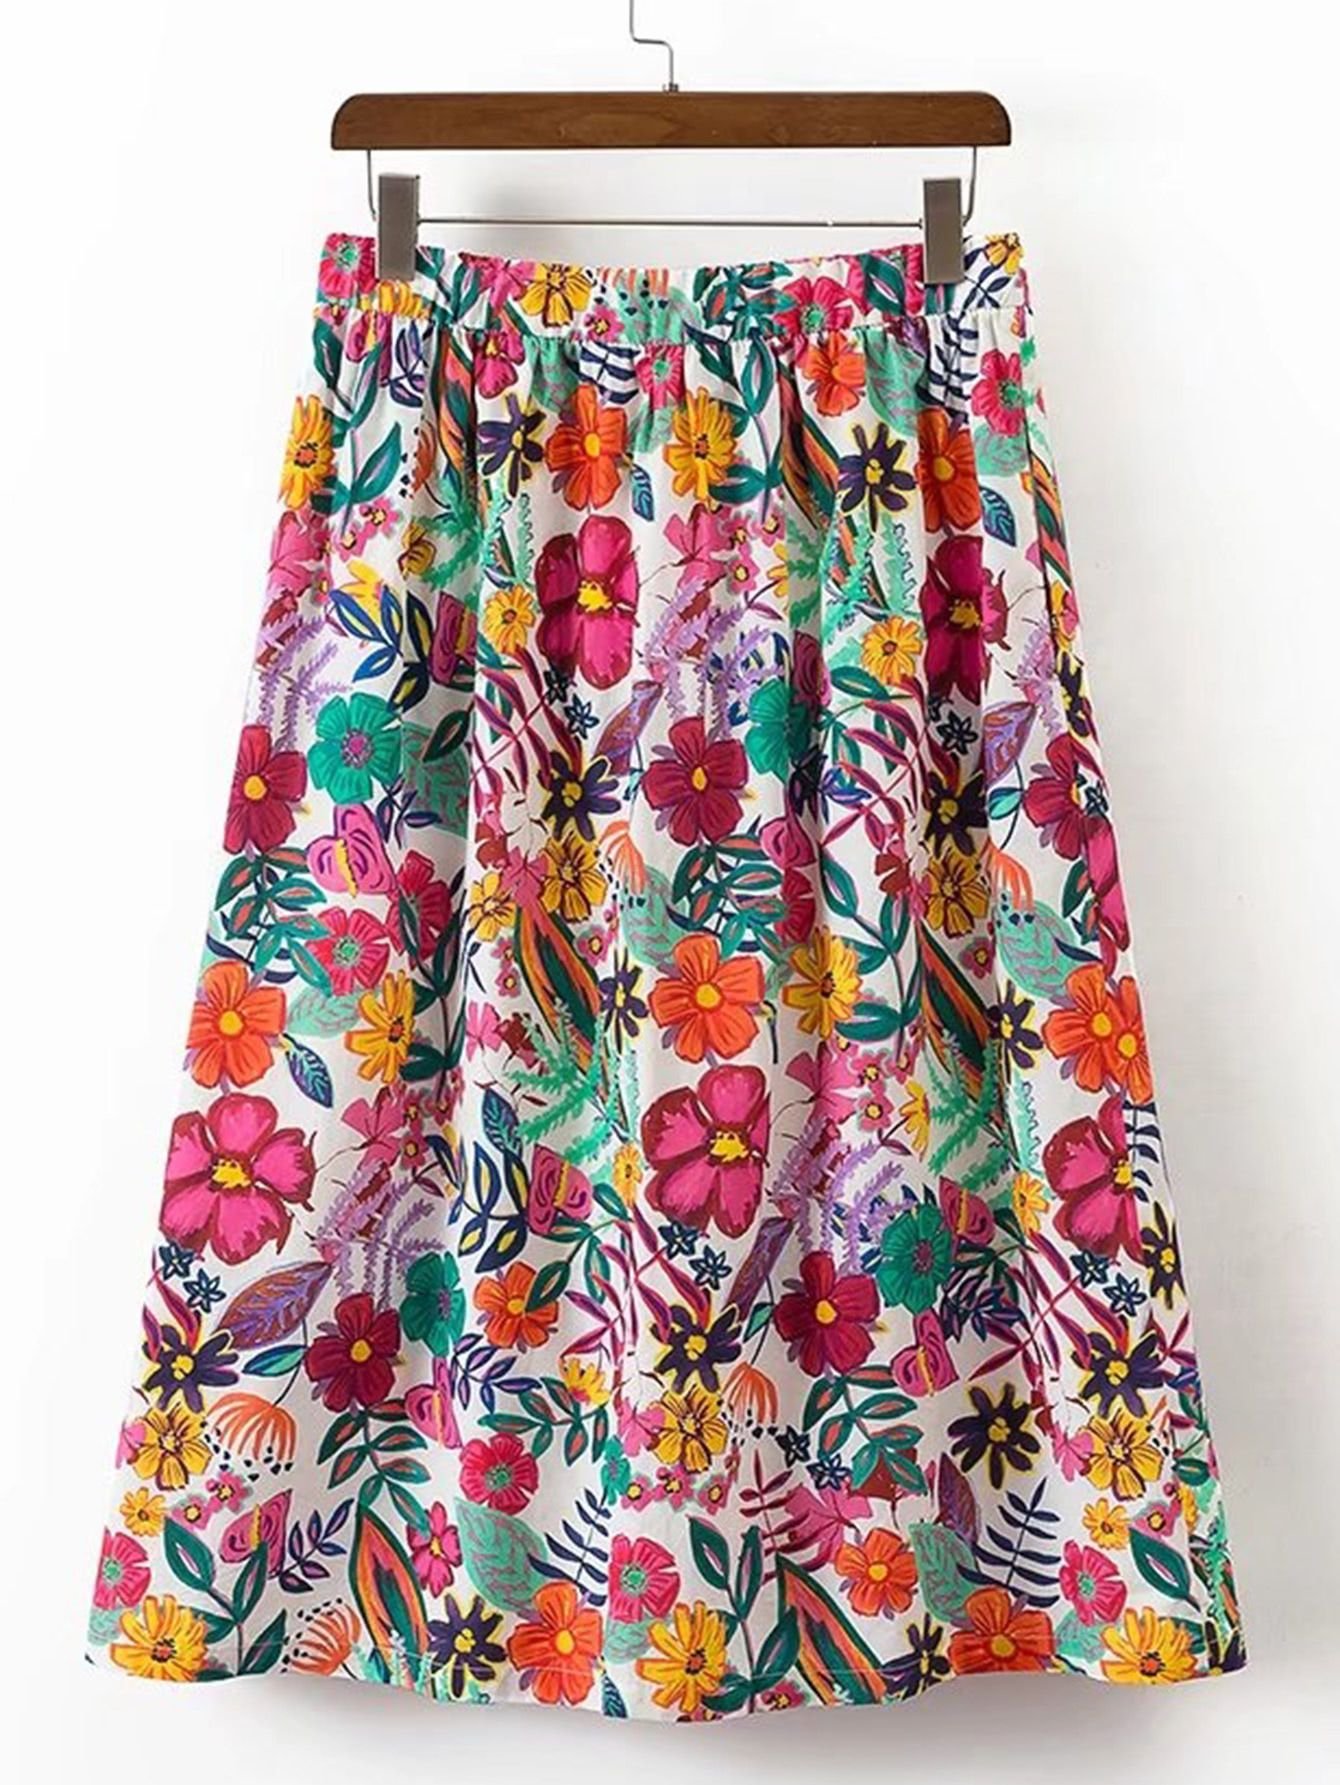 Юбка из вискозы. Цветная юбка. Летние цветные юбки. Фасоны летних юбок. Летняя юбка на резинке.